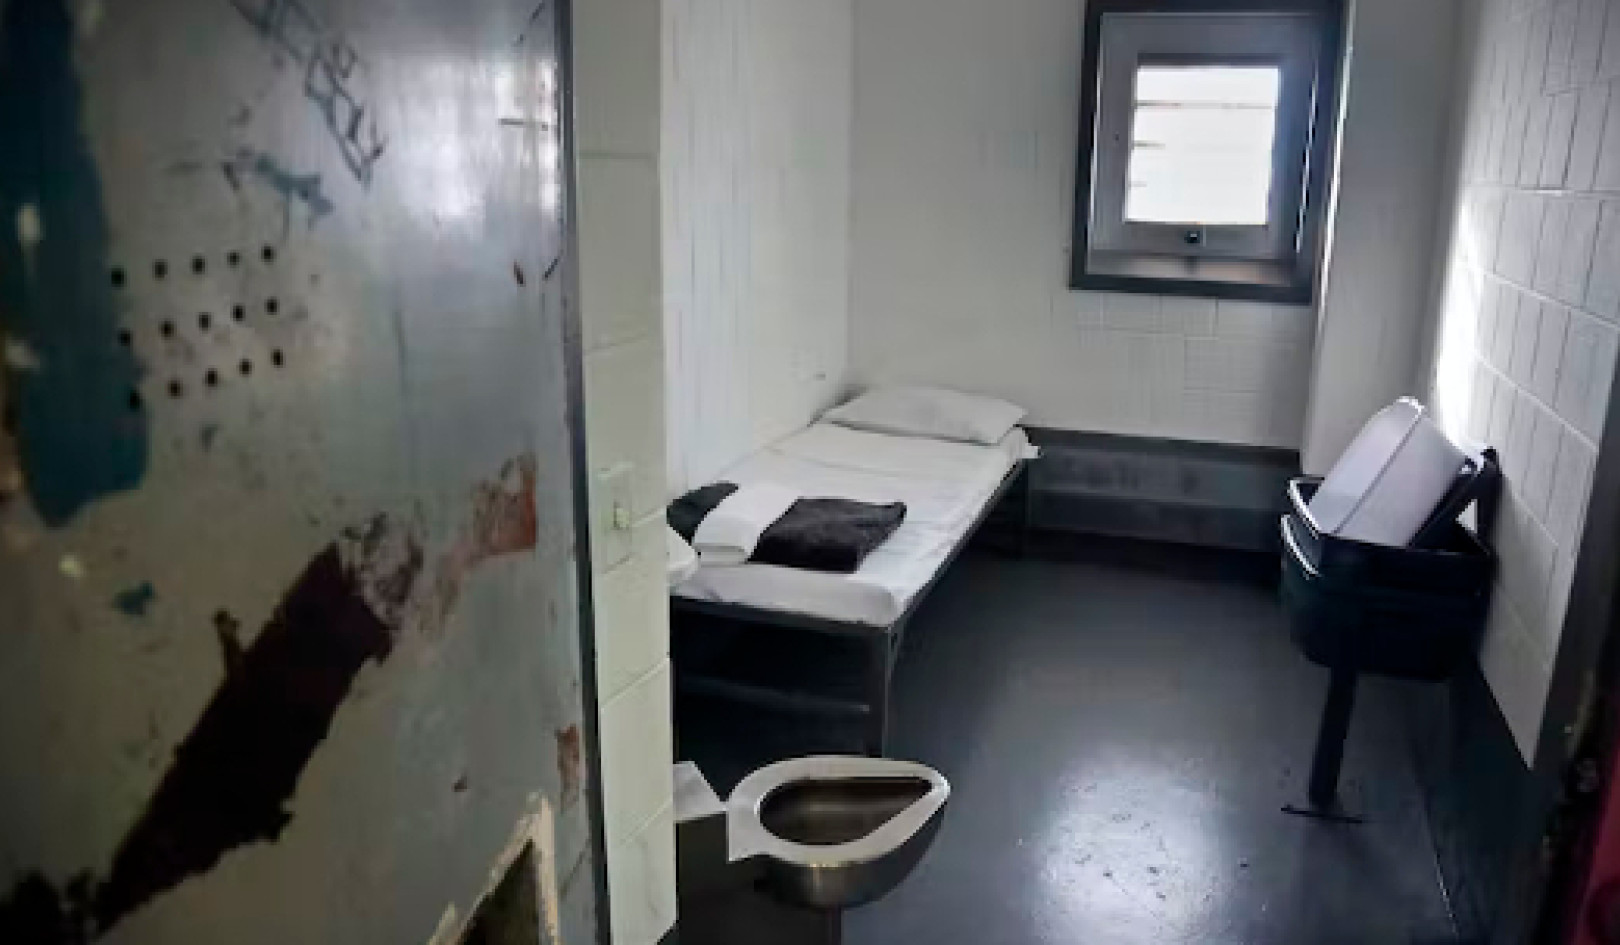 Comprender las experiencias del confinamiento solitario en las prisiones